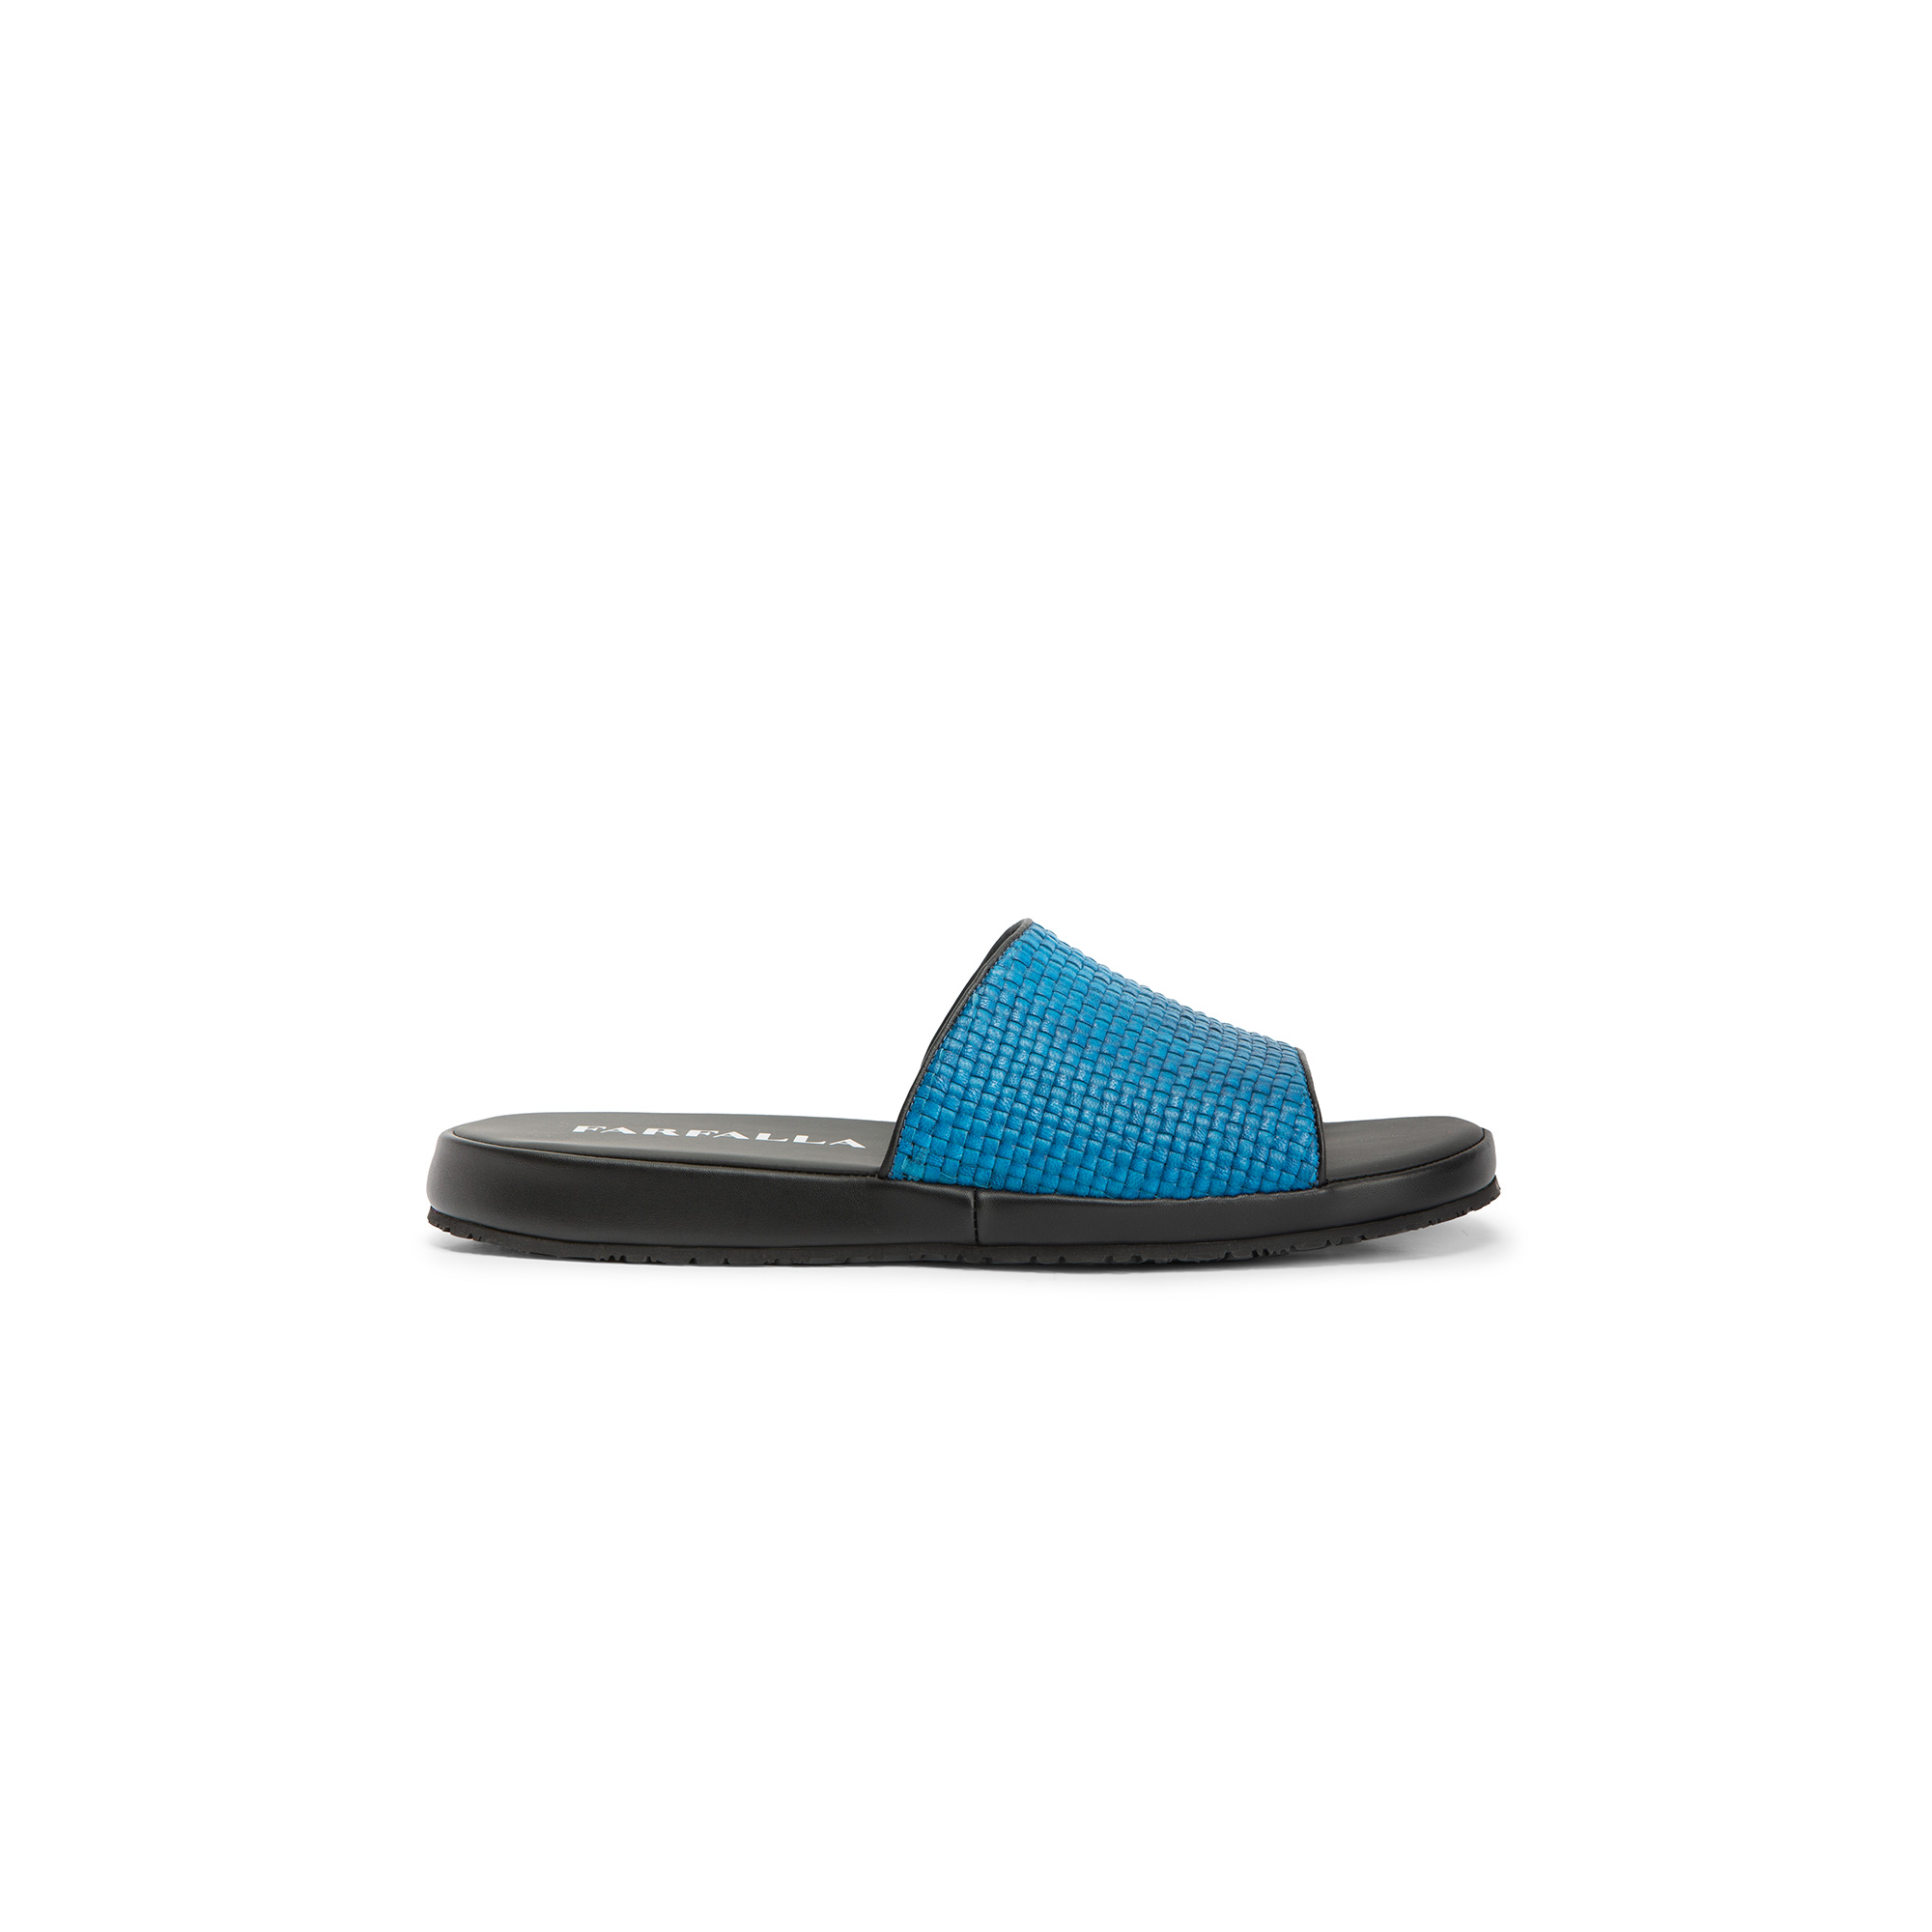 Sandalo esterno pelle intrecciata e vitello azzurro e nero - Farfalla italian slippers